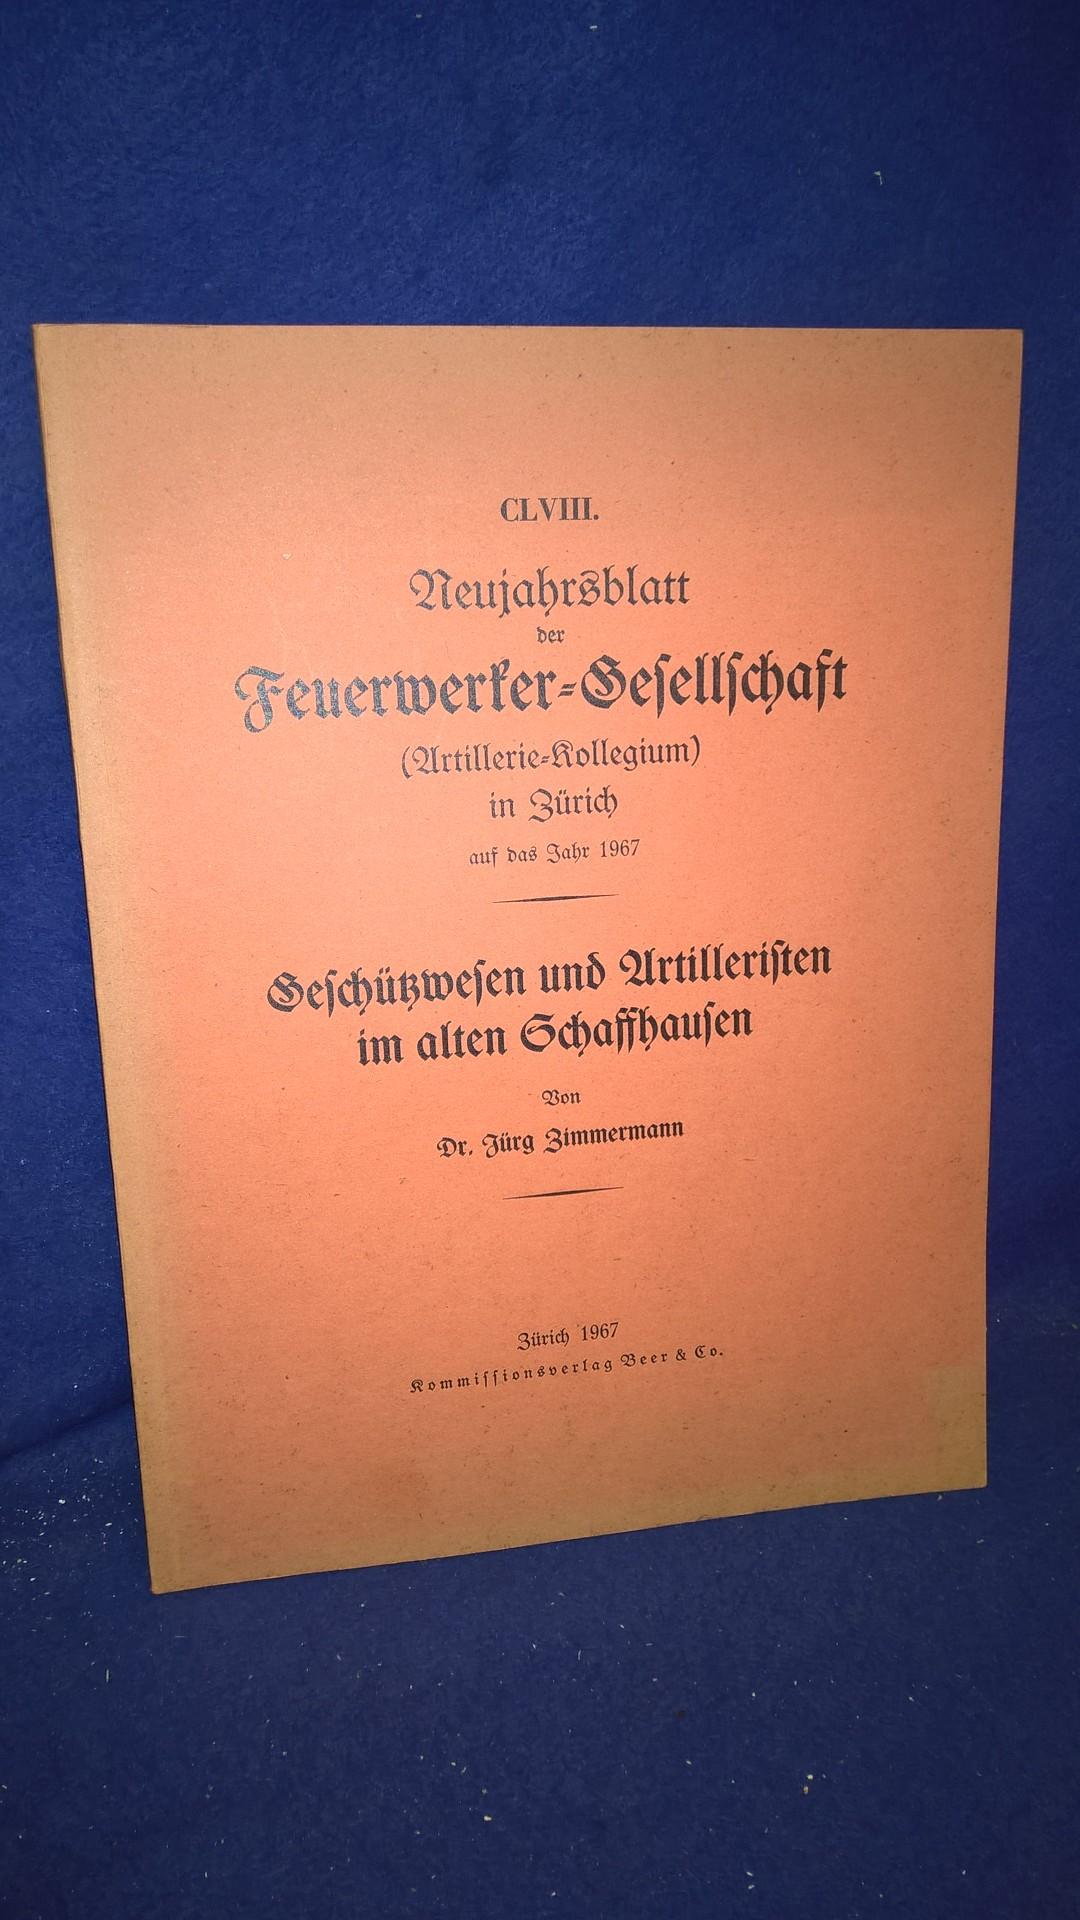 Geschützwesen und Artilleristen im alten Schaffhausen. Aus der Reihe: Neujahrsblatt der Feuerwerker-Gesellschaft ( Artillerie-Kollegium ) in Zürich auf das Jahr 1967.